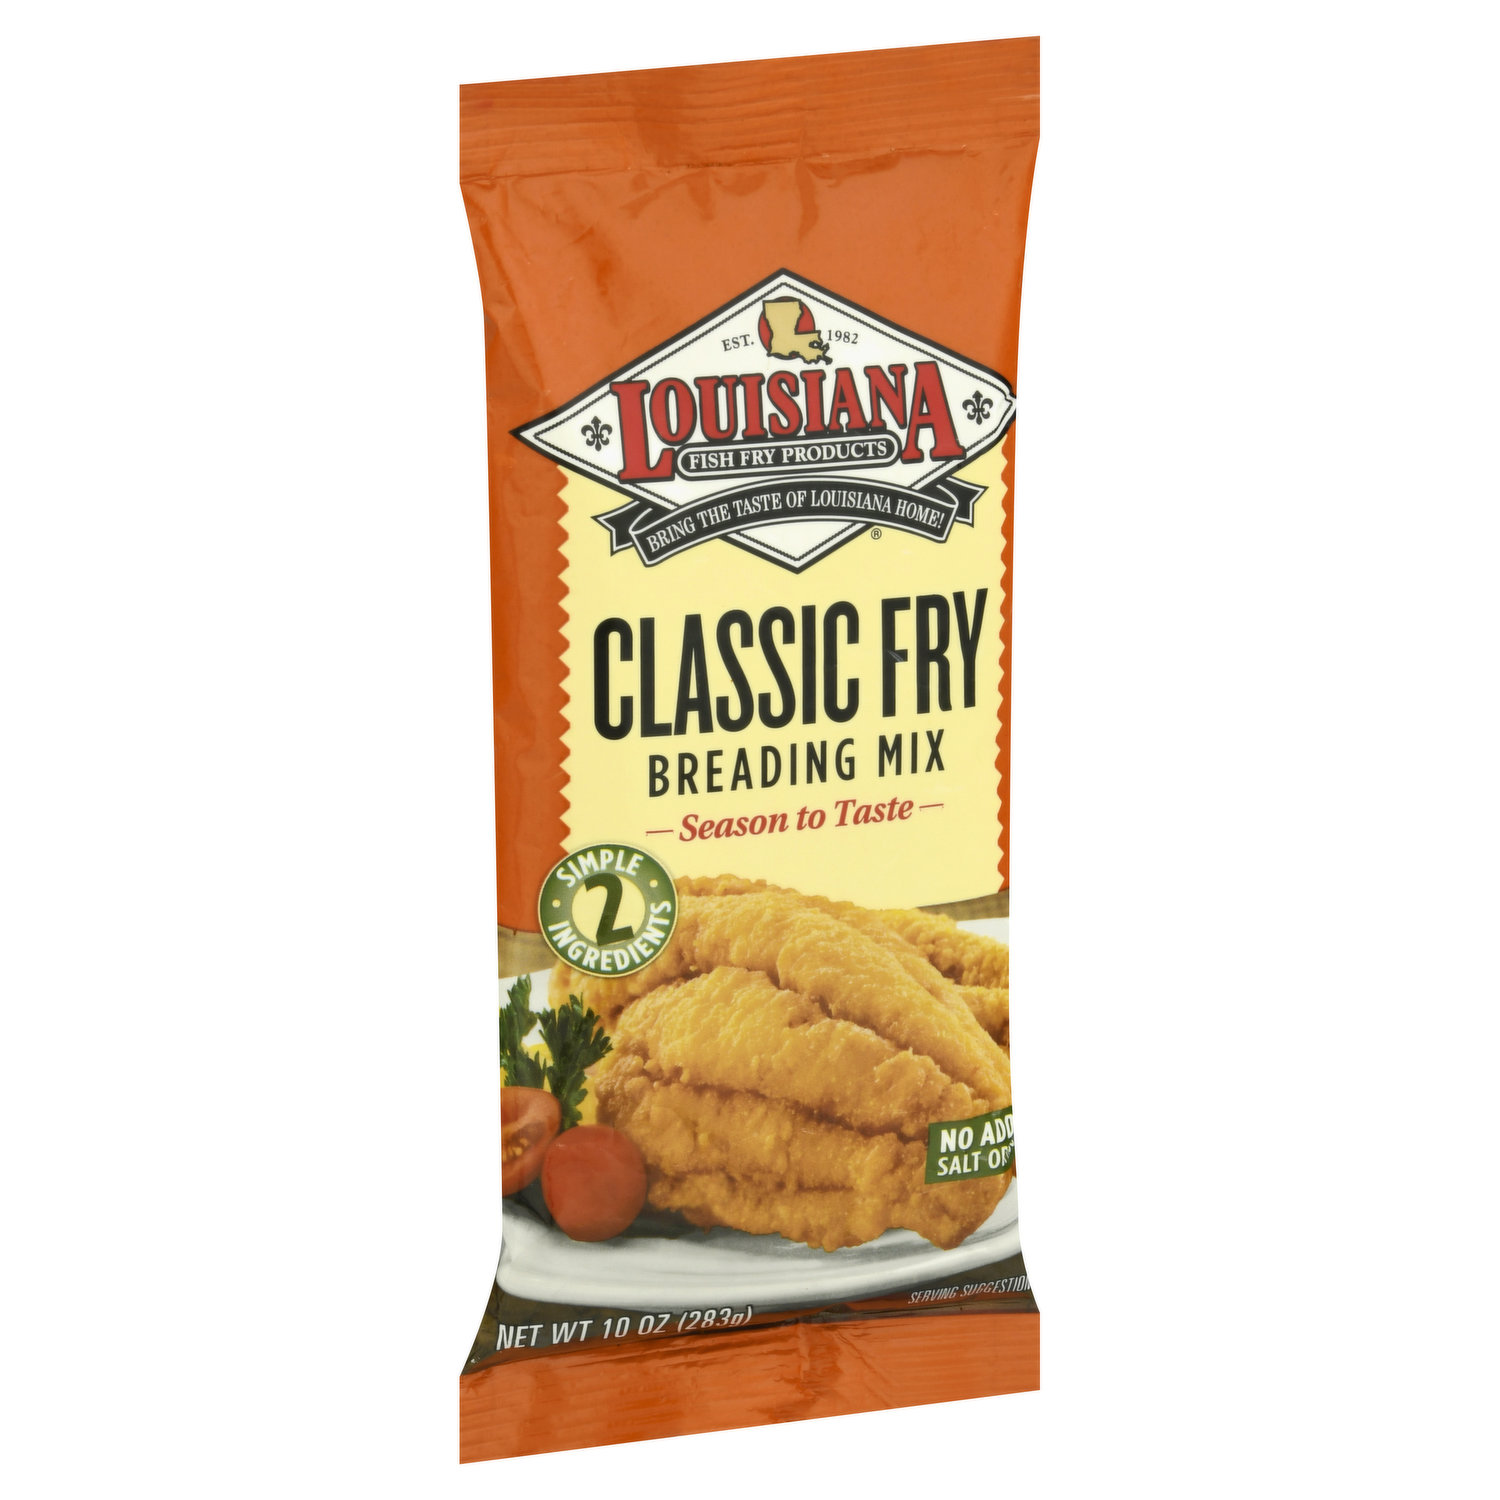 Louisiana Fish Fry Products - Louisiana Fish Fry Products, Chicken